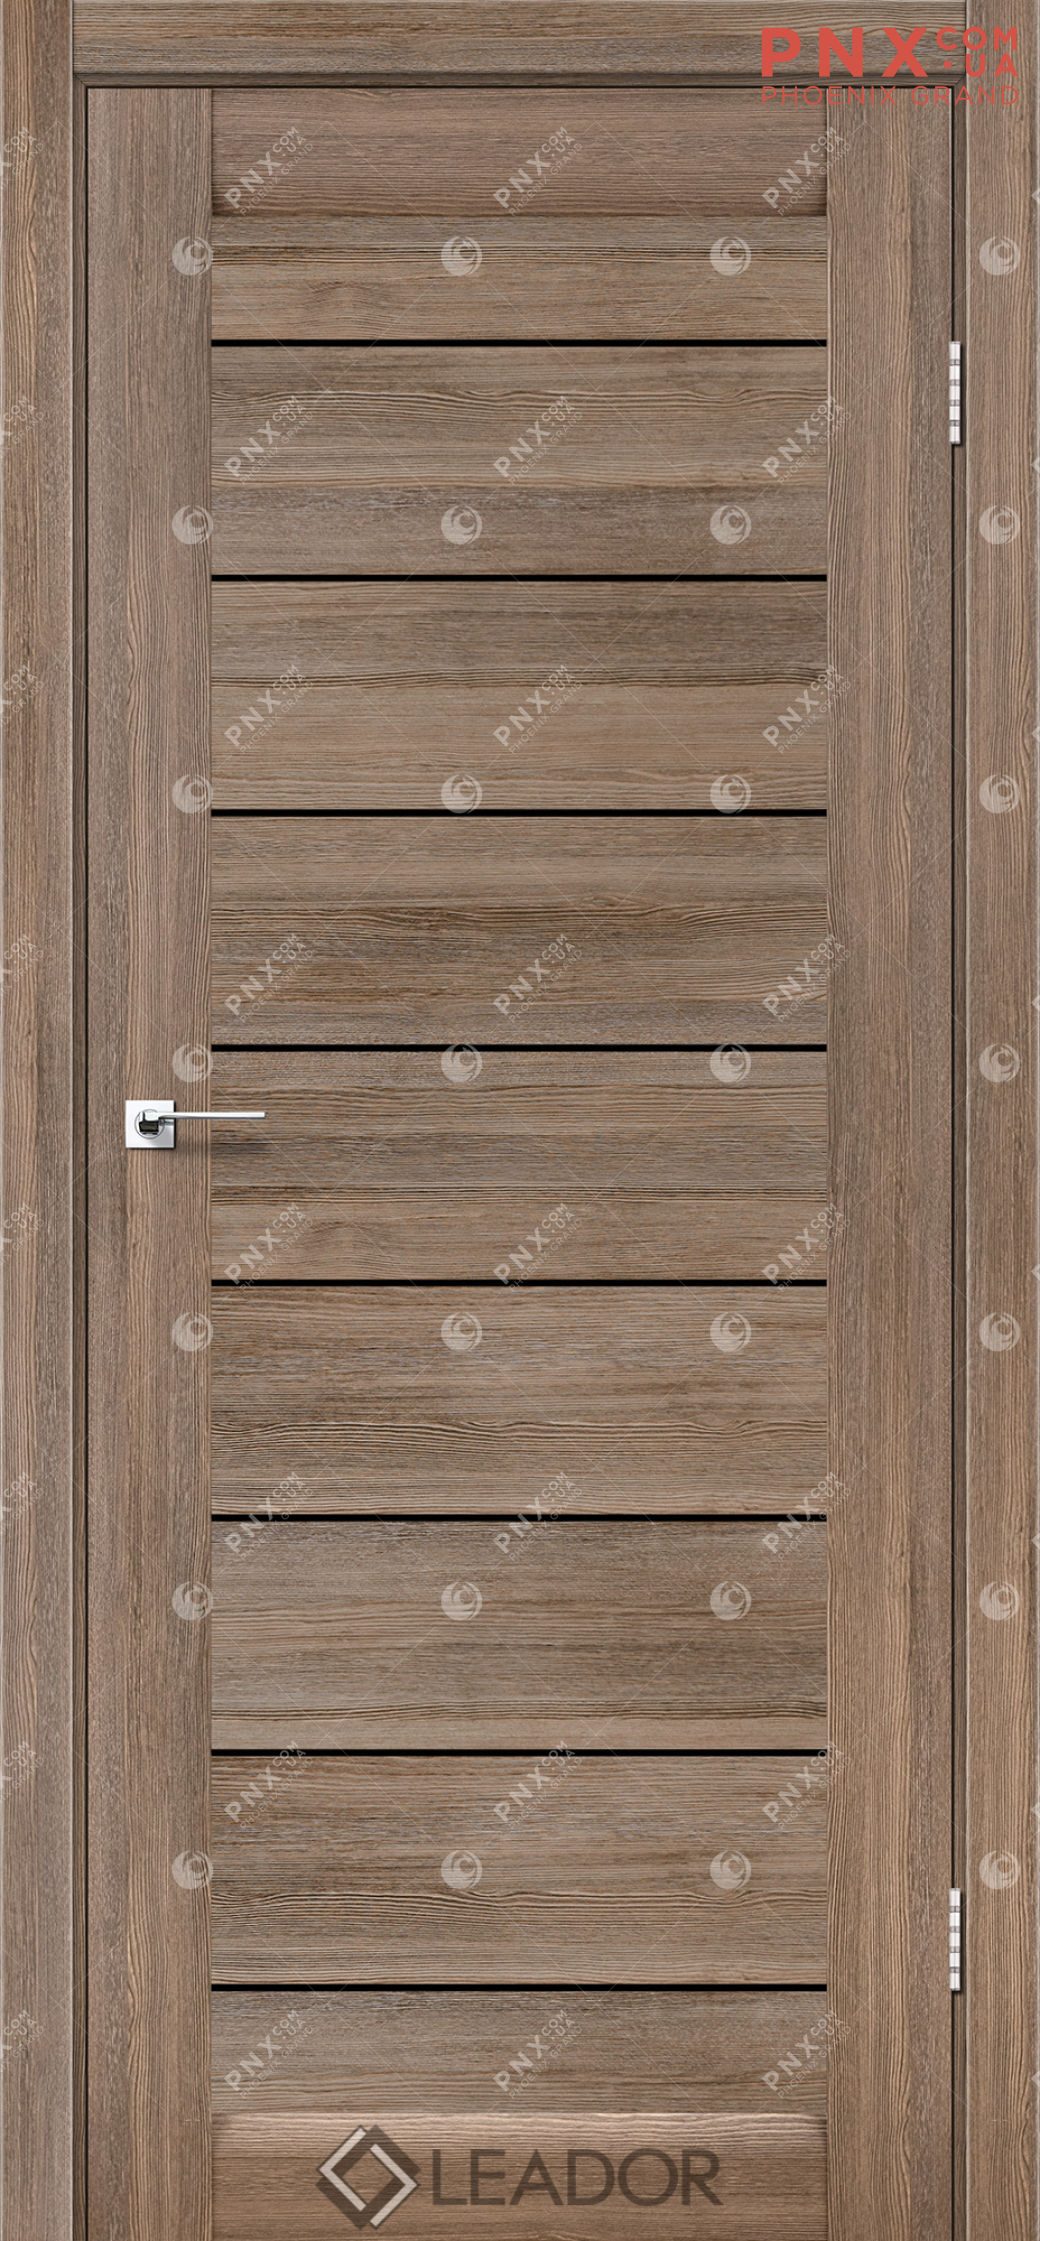 Міжкімнатні двері LEADOR Neapol, Сіре дерево, Чорне скло